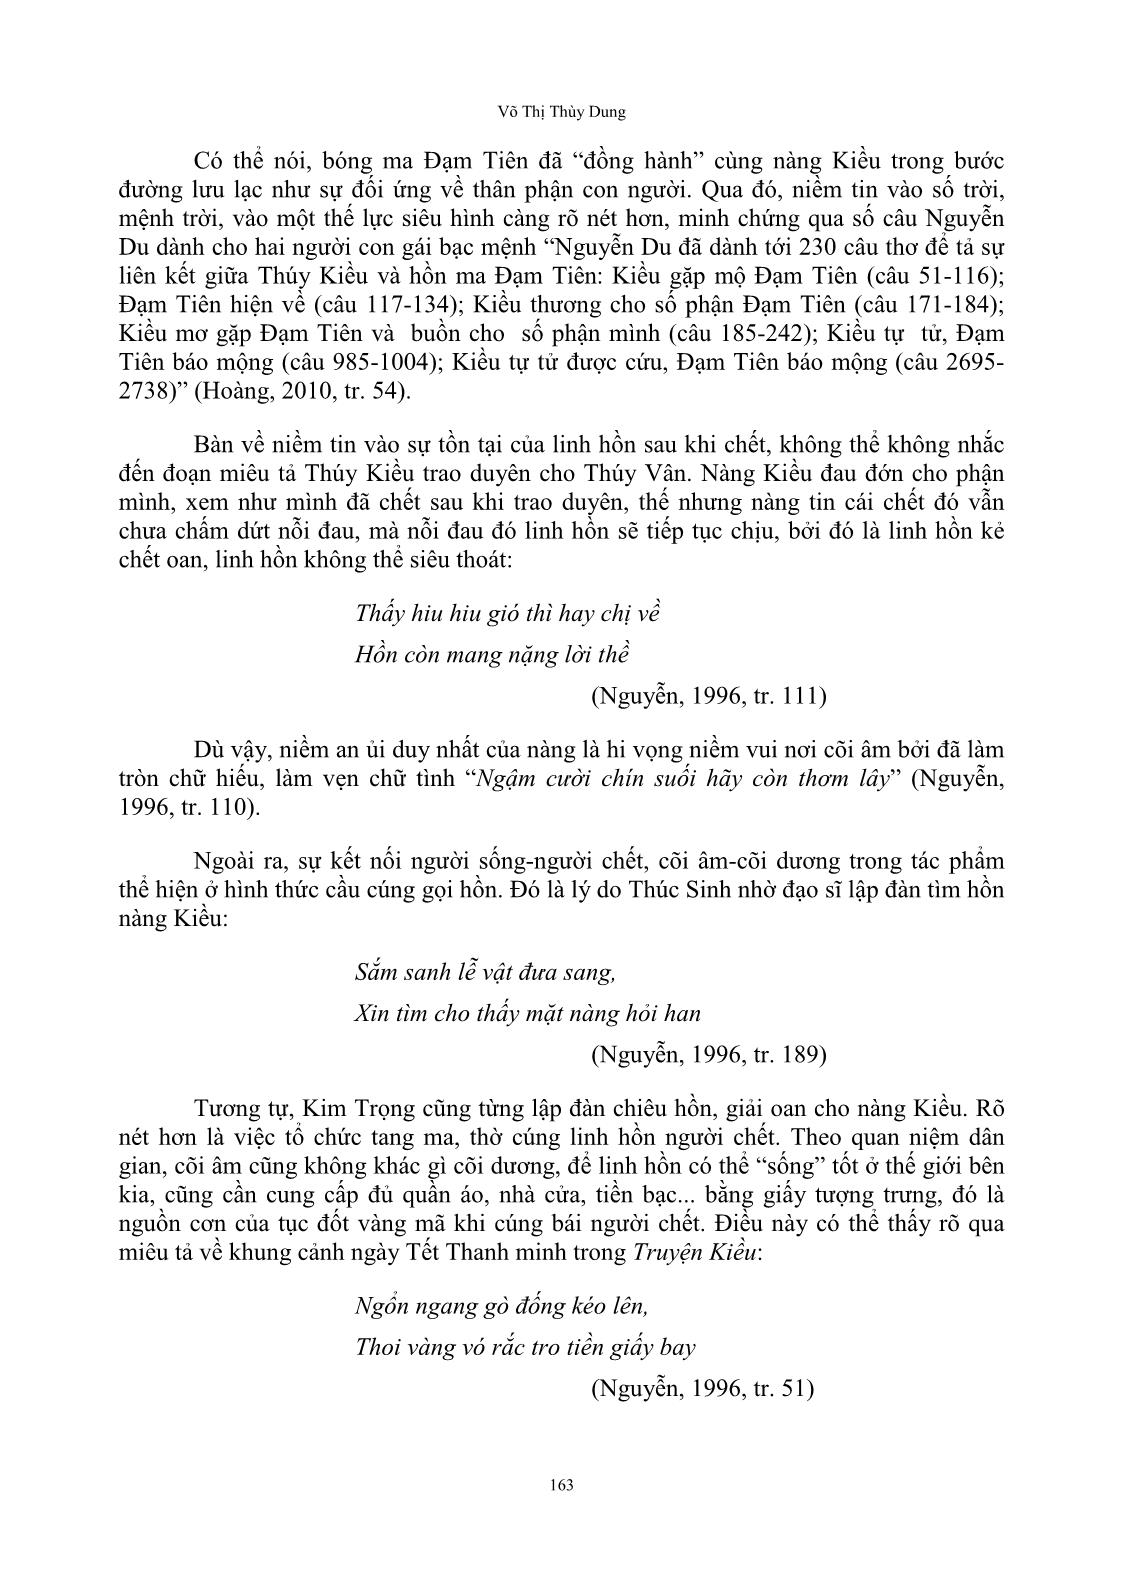 Tín ngưỡng dân gian trong truyện kiều và văn tế thập loại chúng sinh (văn chiêu hồn) của Nguyễn Du trang 9